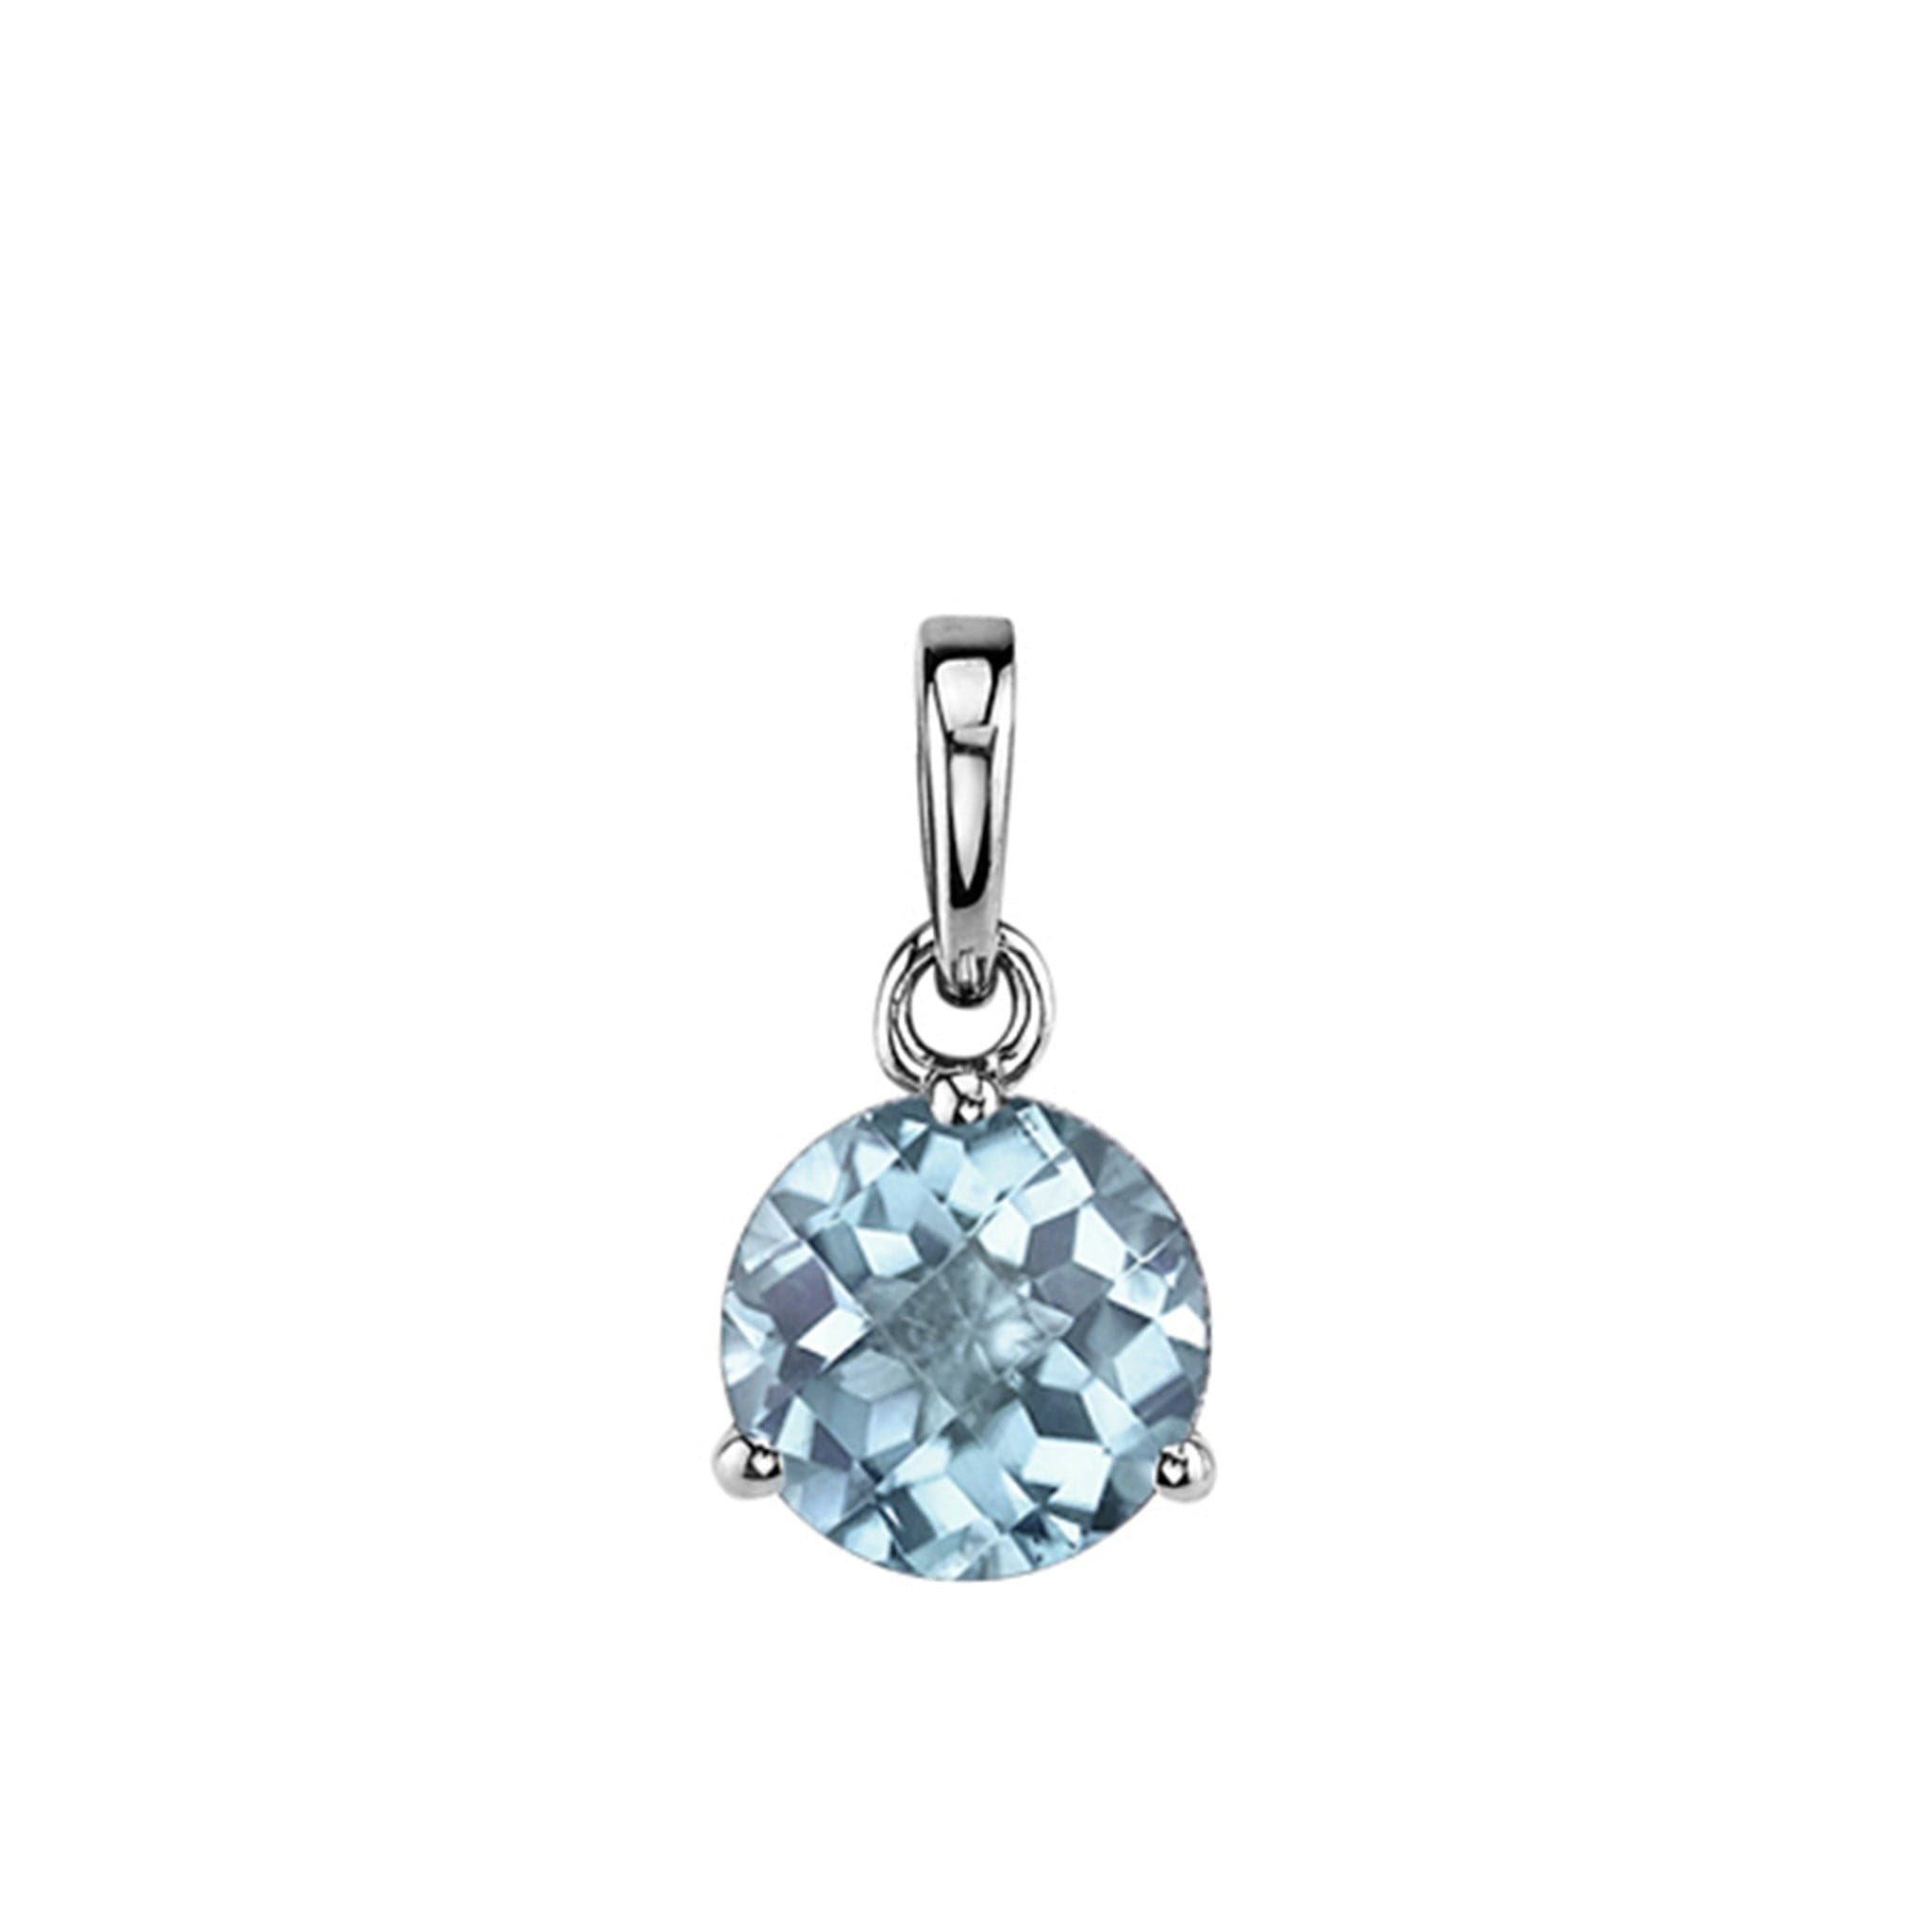 Aquamarine Gemstone Necklaces Online in USA - Aqua Stone Necklace